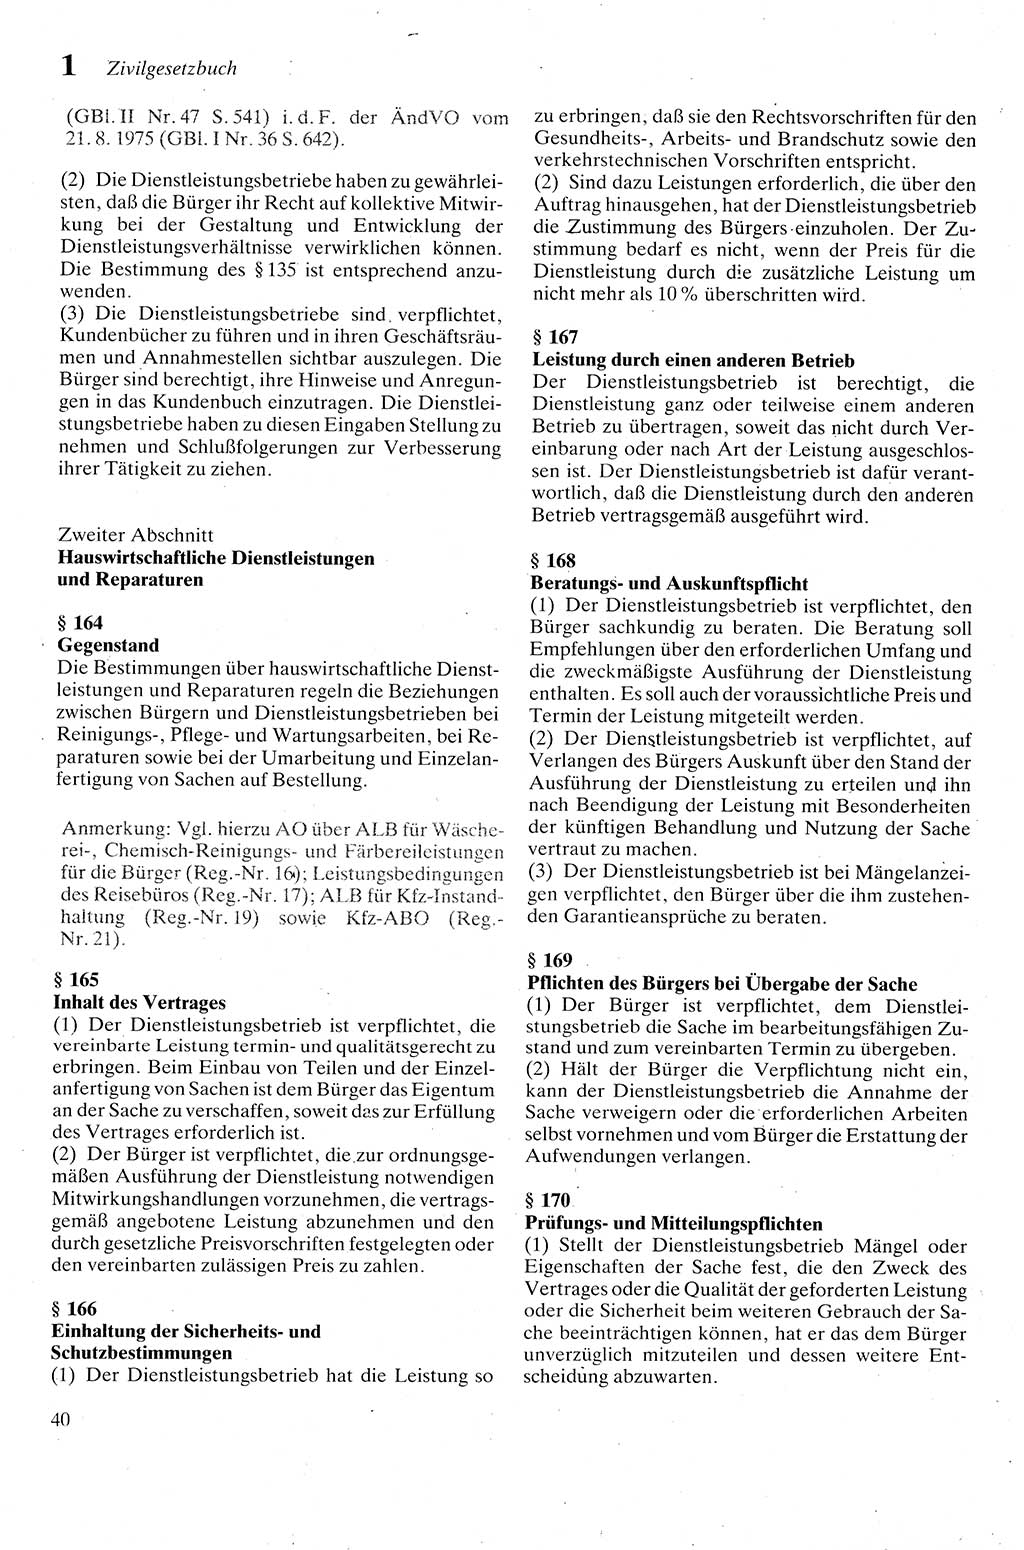 Zivilgesetzbuch (ZVG) sowie angrenzende Gesetze und Bestimmungen [Deutsche Demokratische Republik (DDR)] 1975, Seite 40 (ZGB Ges. Best. DDR 1975, S. 40)